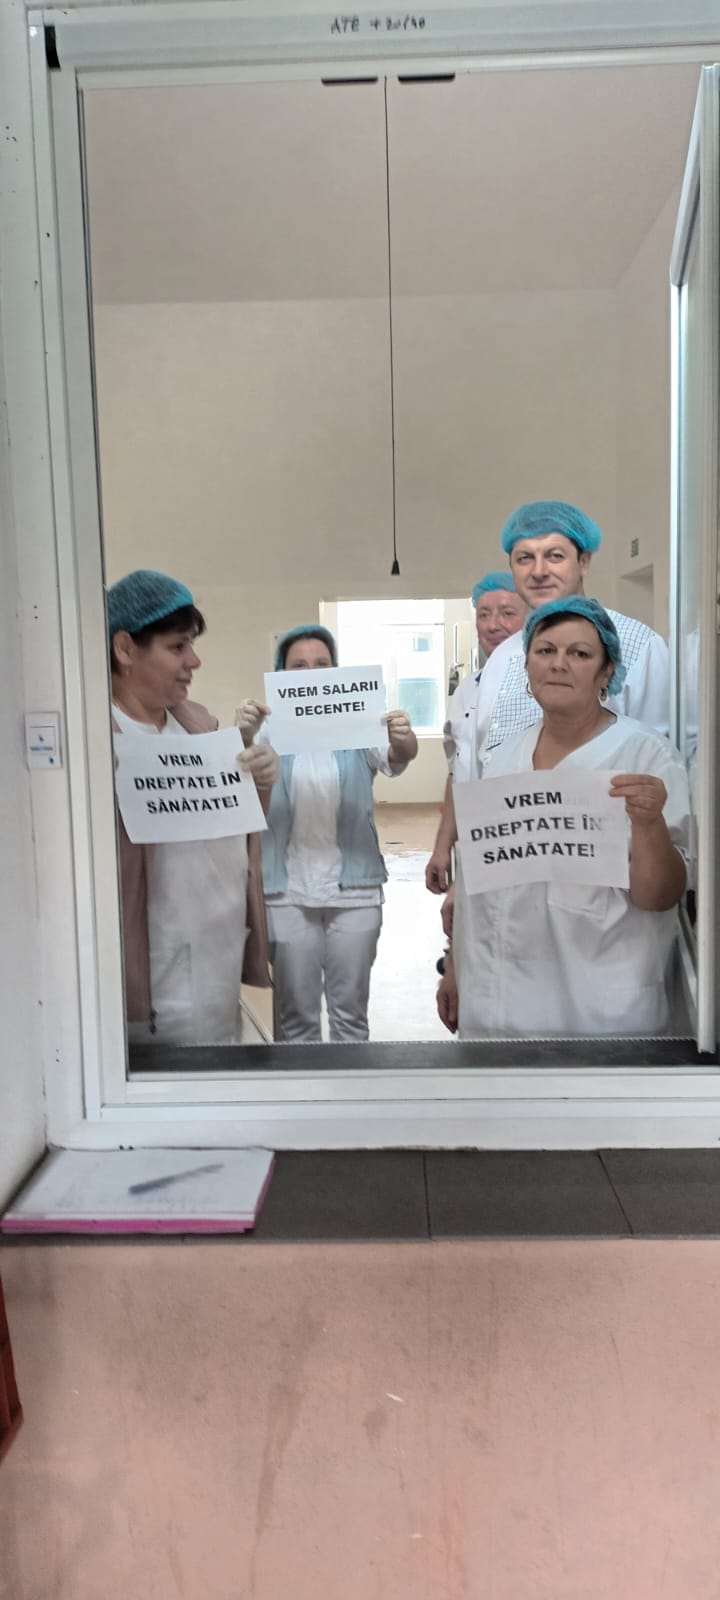 FOTO: TESA ar putea bloca salariile în spitale